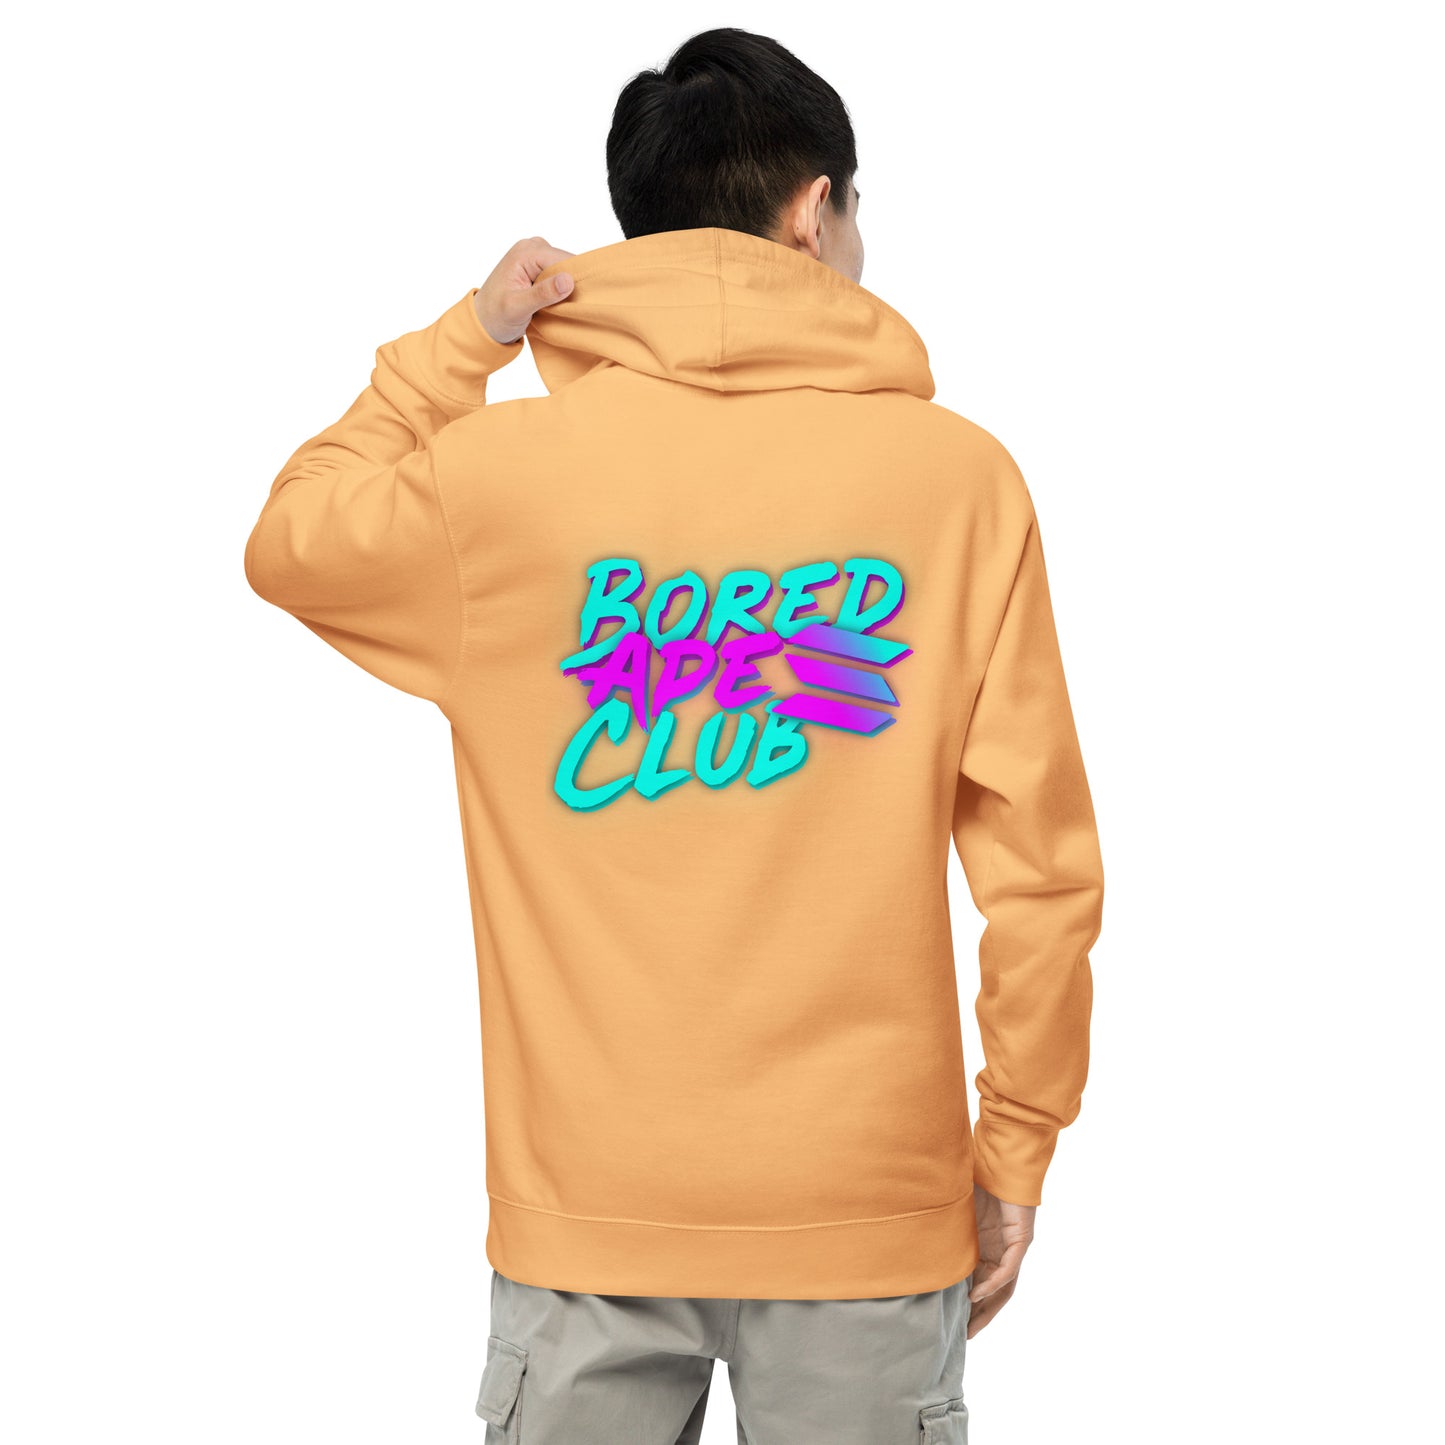 BASC hoodie